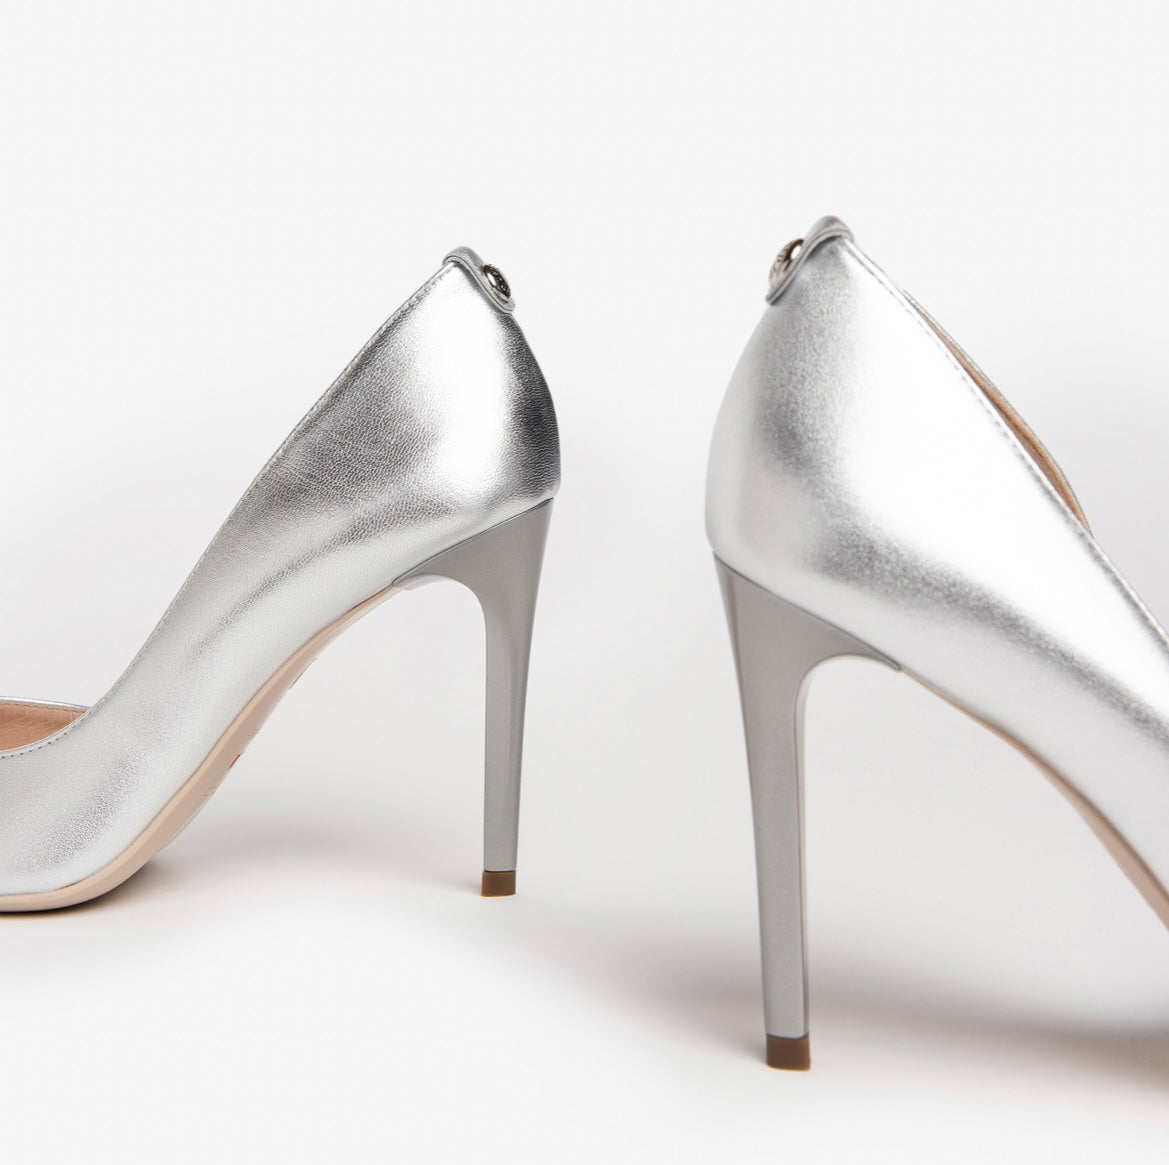 Nerogiardini silver shoes